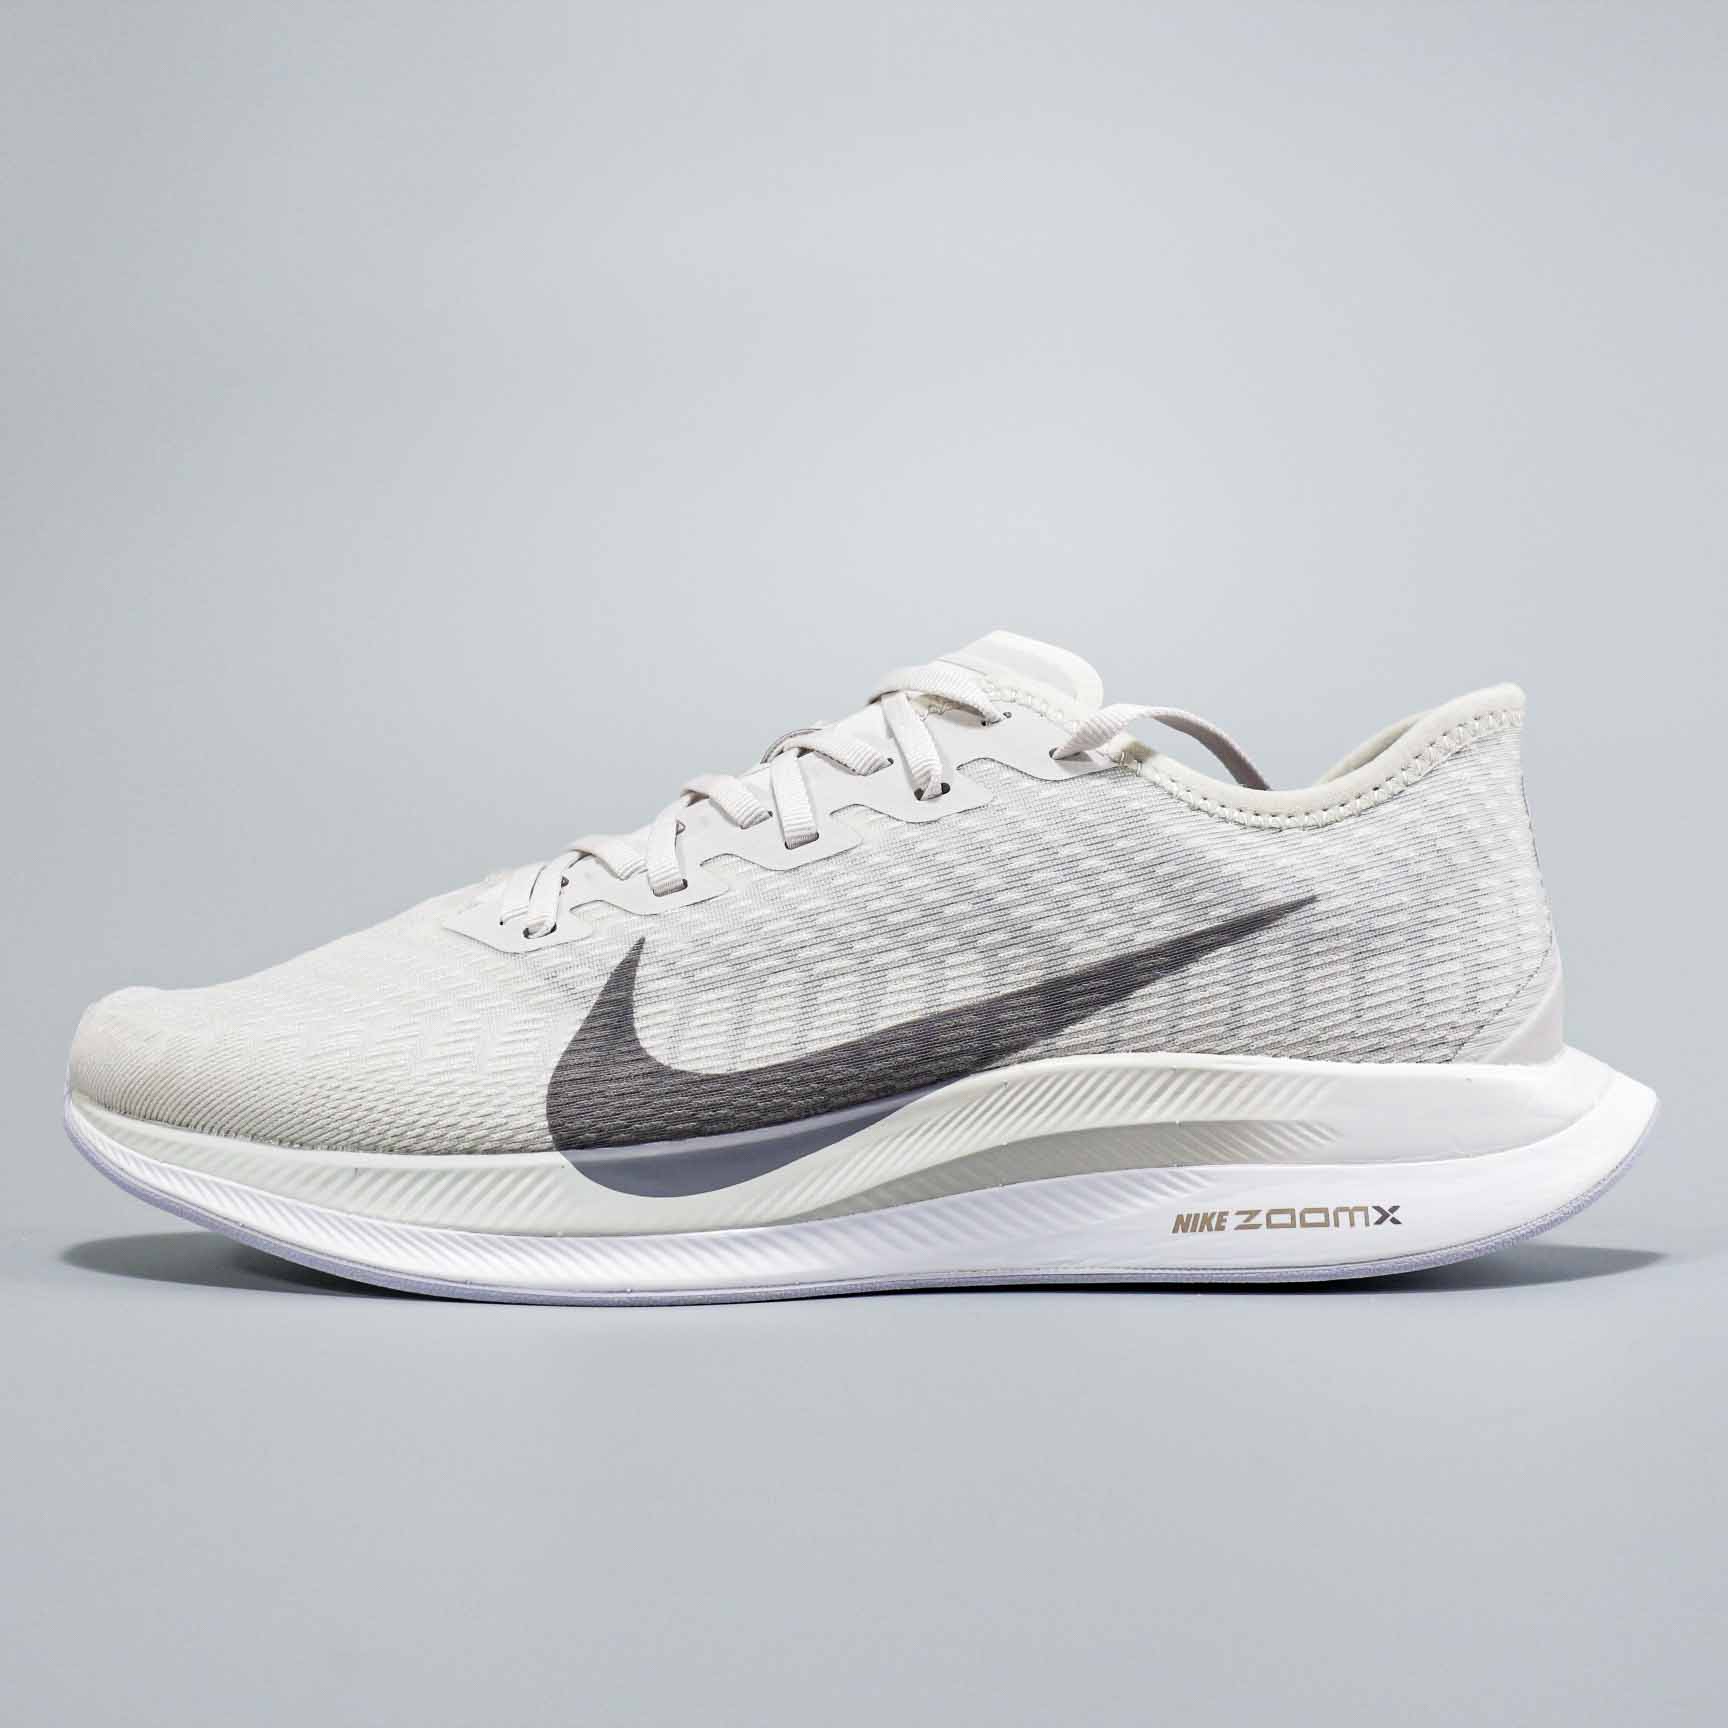 2020 Nike Zoom Pegasus Turbo 2 White Grey Running Shoes